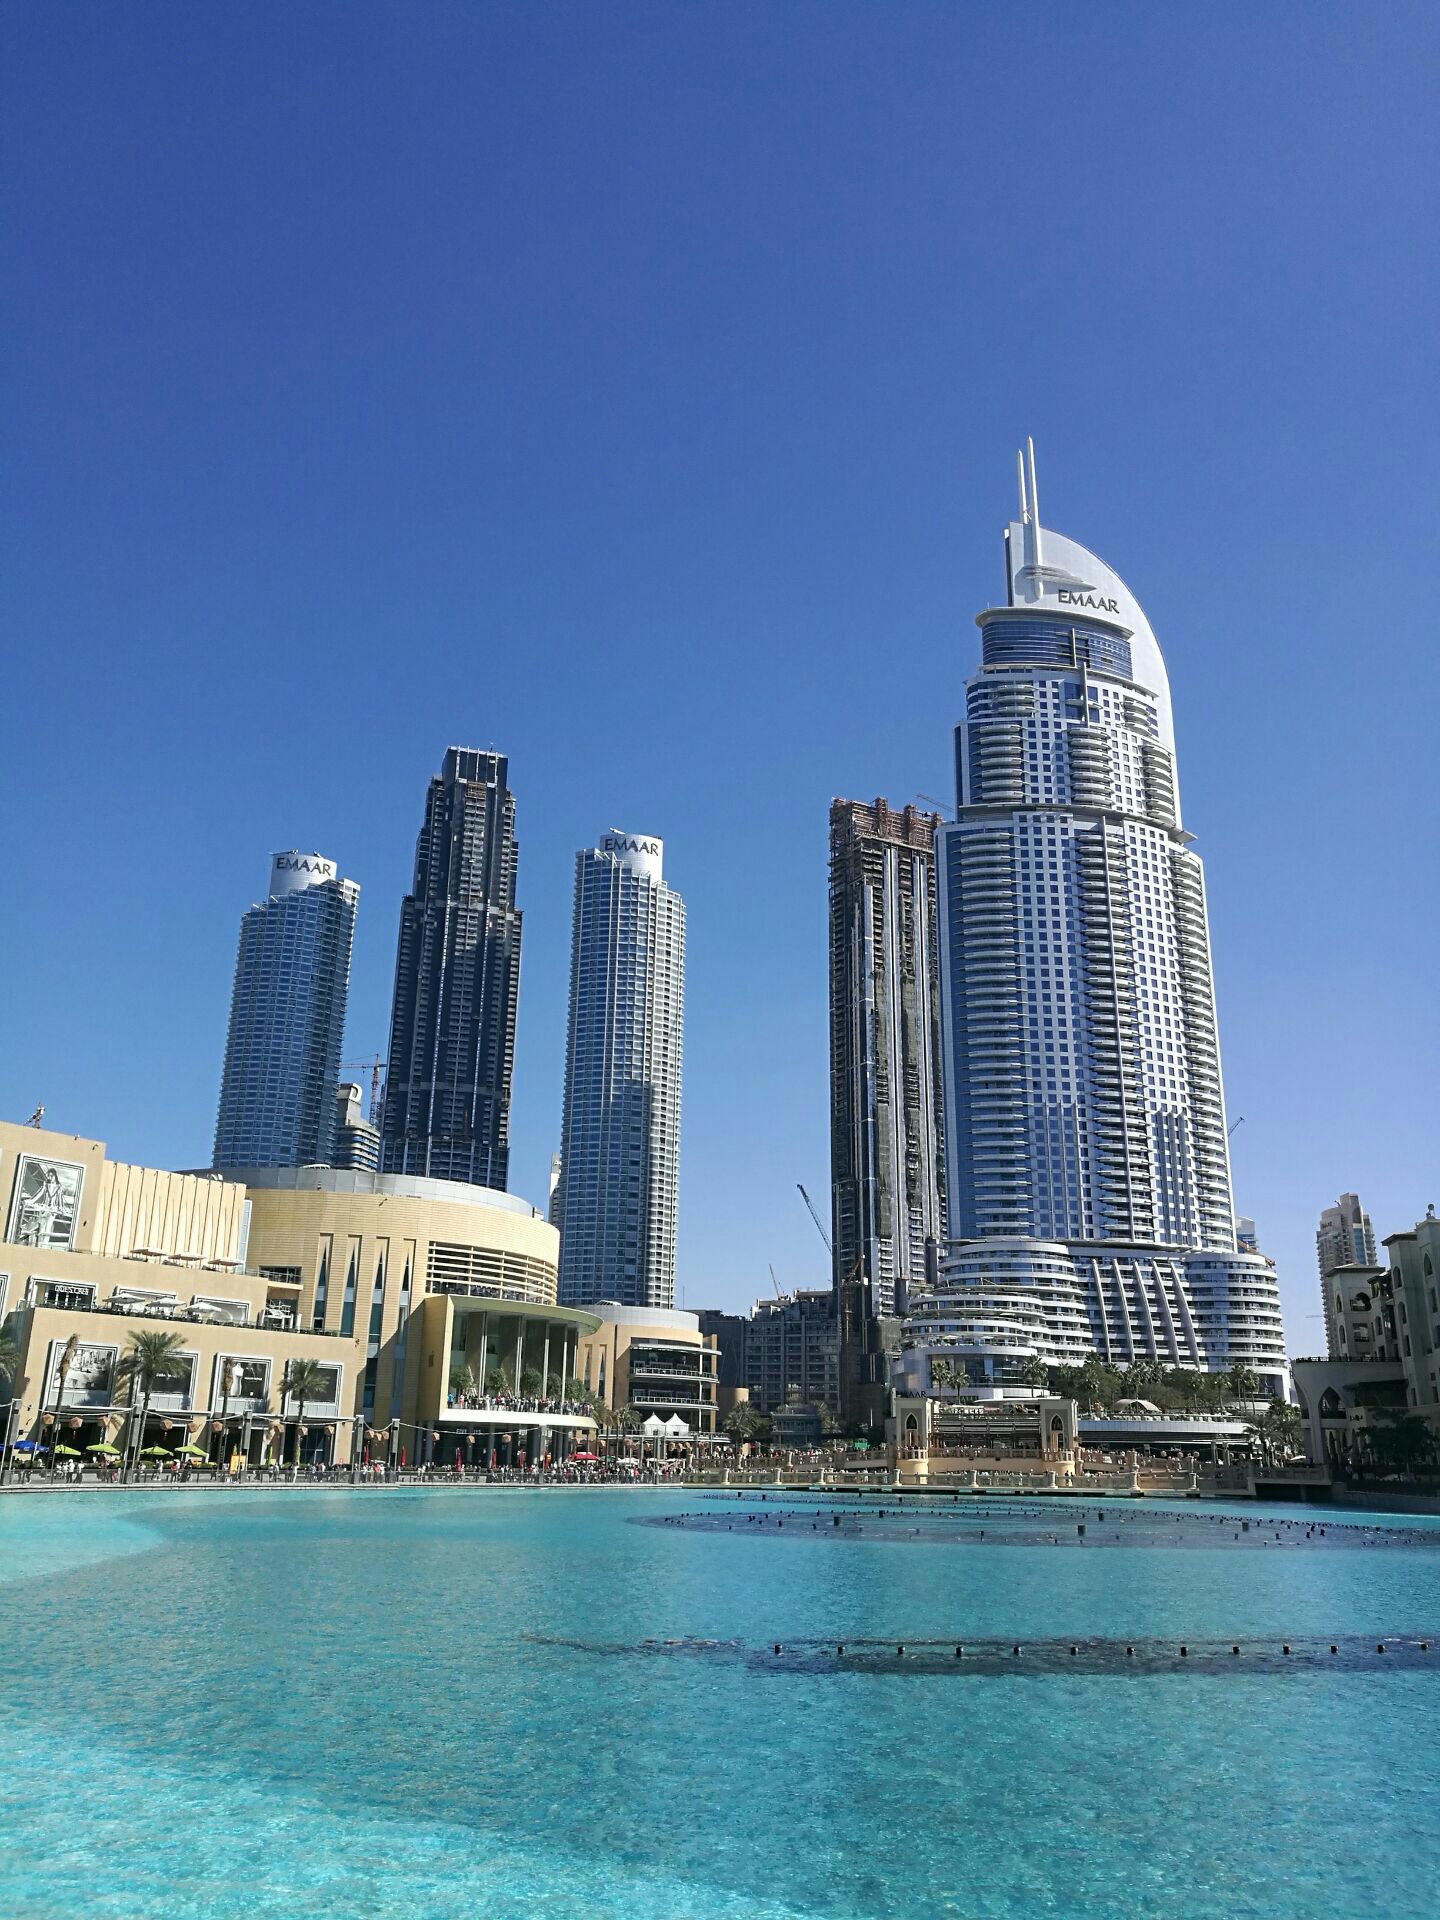 2019迪拜喷泉_旅游攻略_门票_地址_游记点评,迪拜旅游景点推荐 - 去哪儿攻略社区